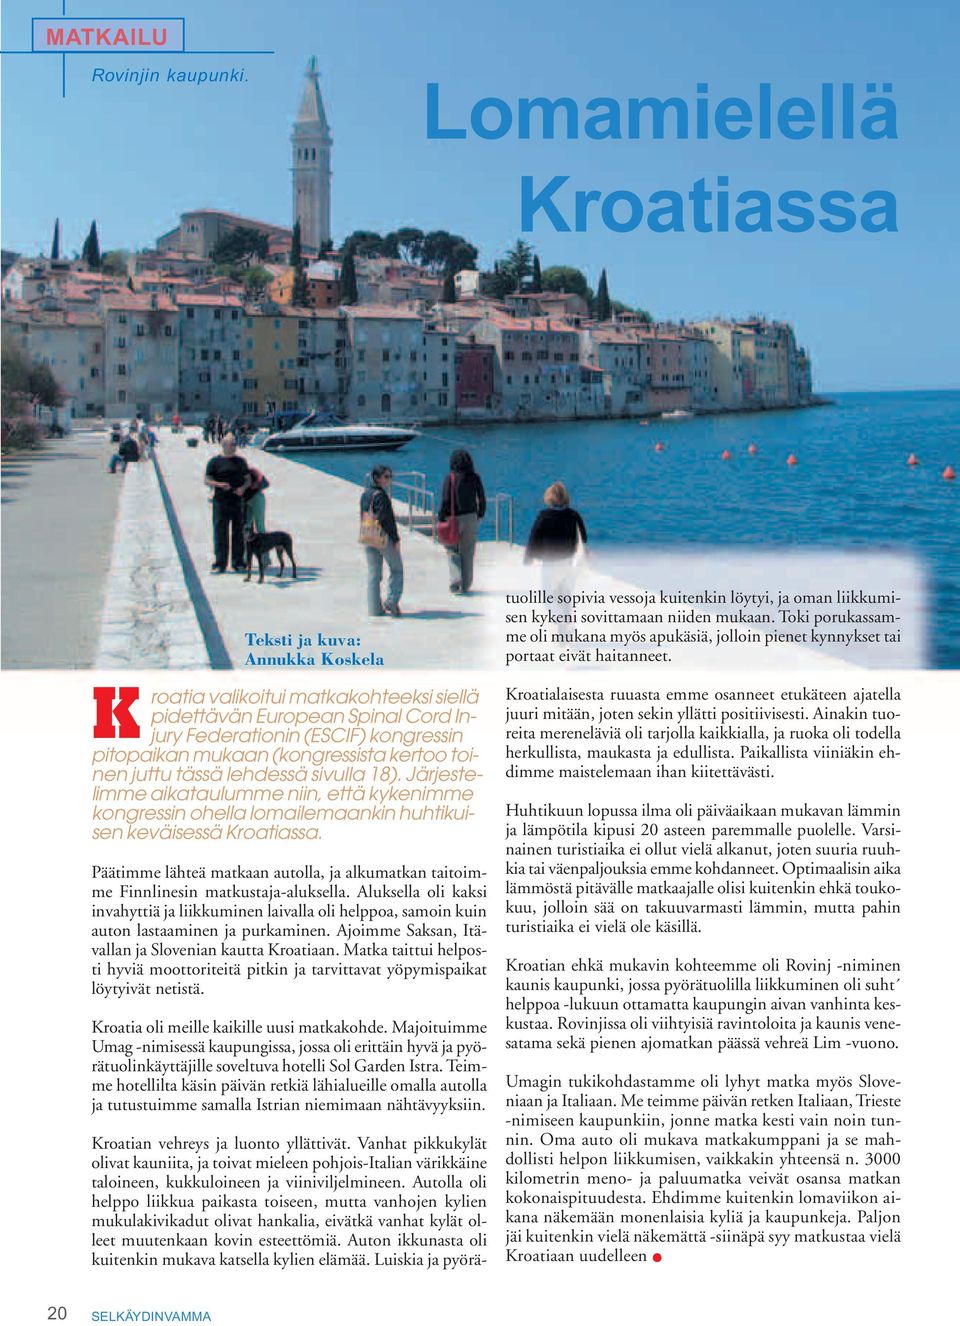 kertoo toinen juttu tässä lehdessä sivulla 18). Järjestelimme aikataulumme niin, että kykenimme kongressin ohella lomailemaankin huhtikuisen keväisessä Kroatiassa.